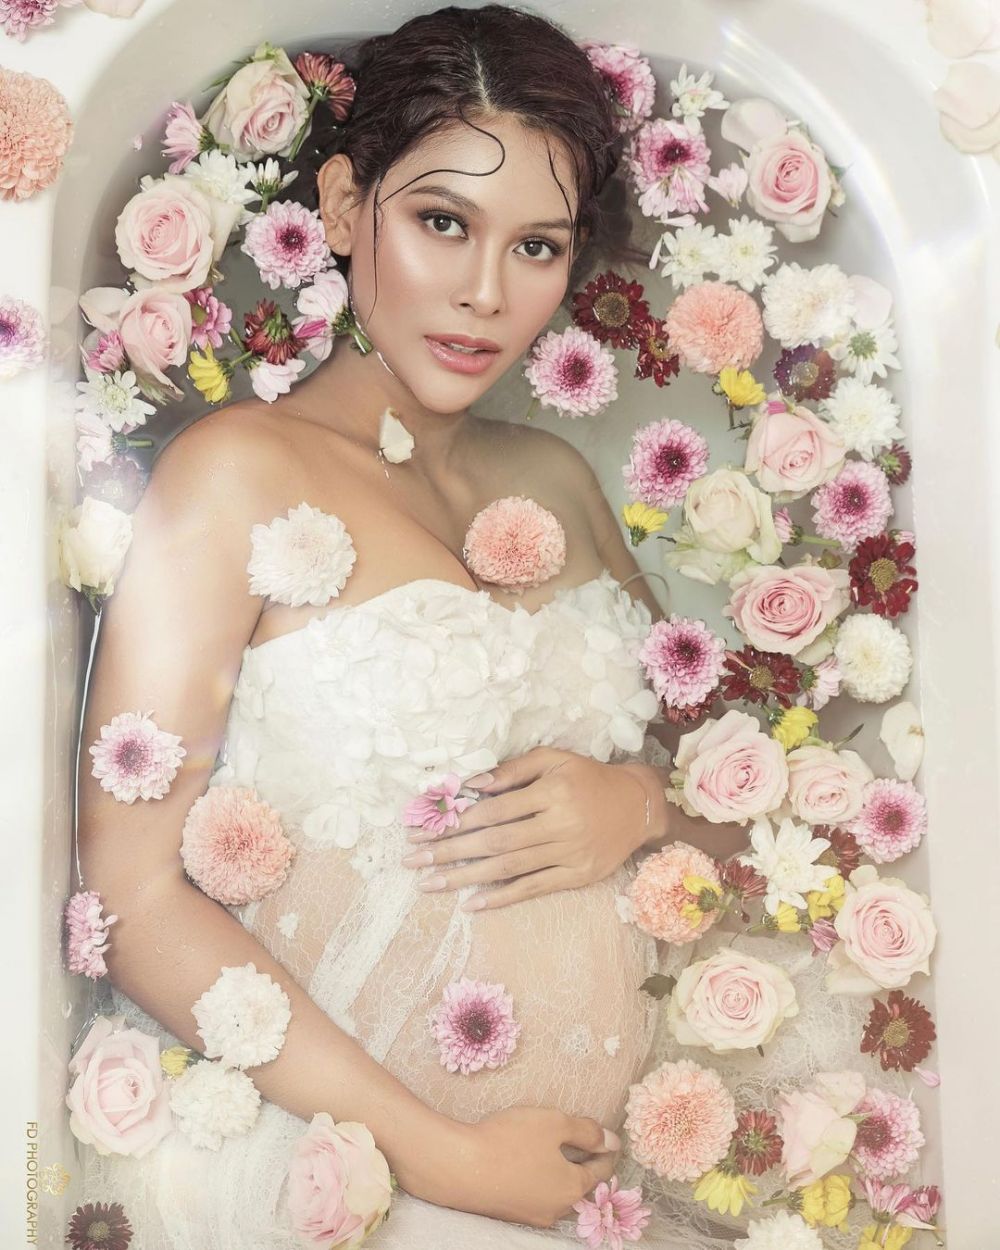 Gaya maternity shoot 9 model catwalk, estetik dan penuh makna